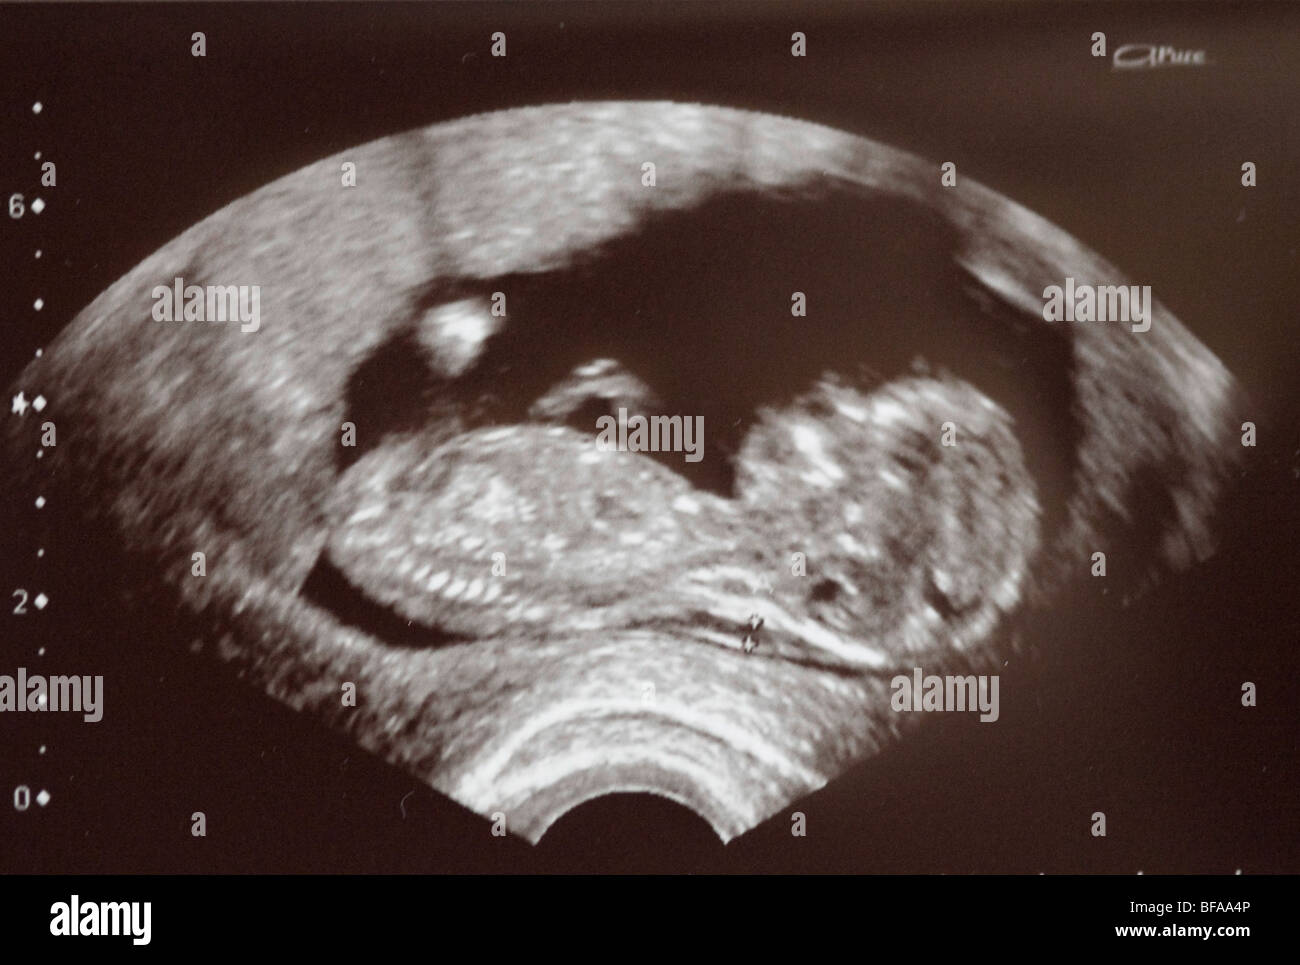 Sonogram of a foetus Stock Photo